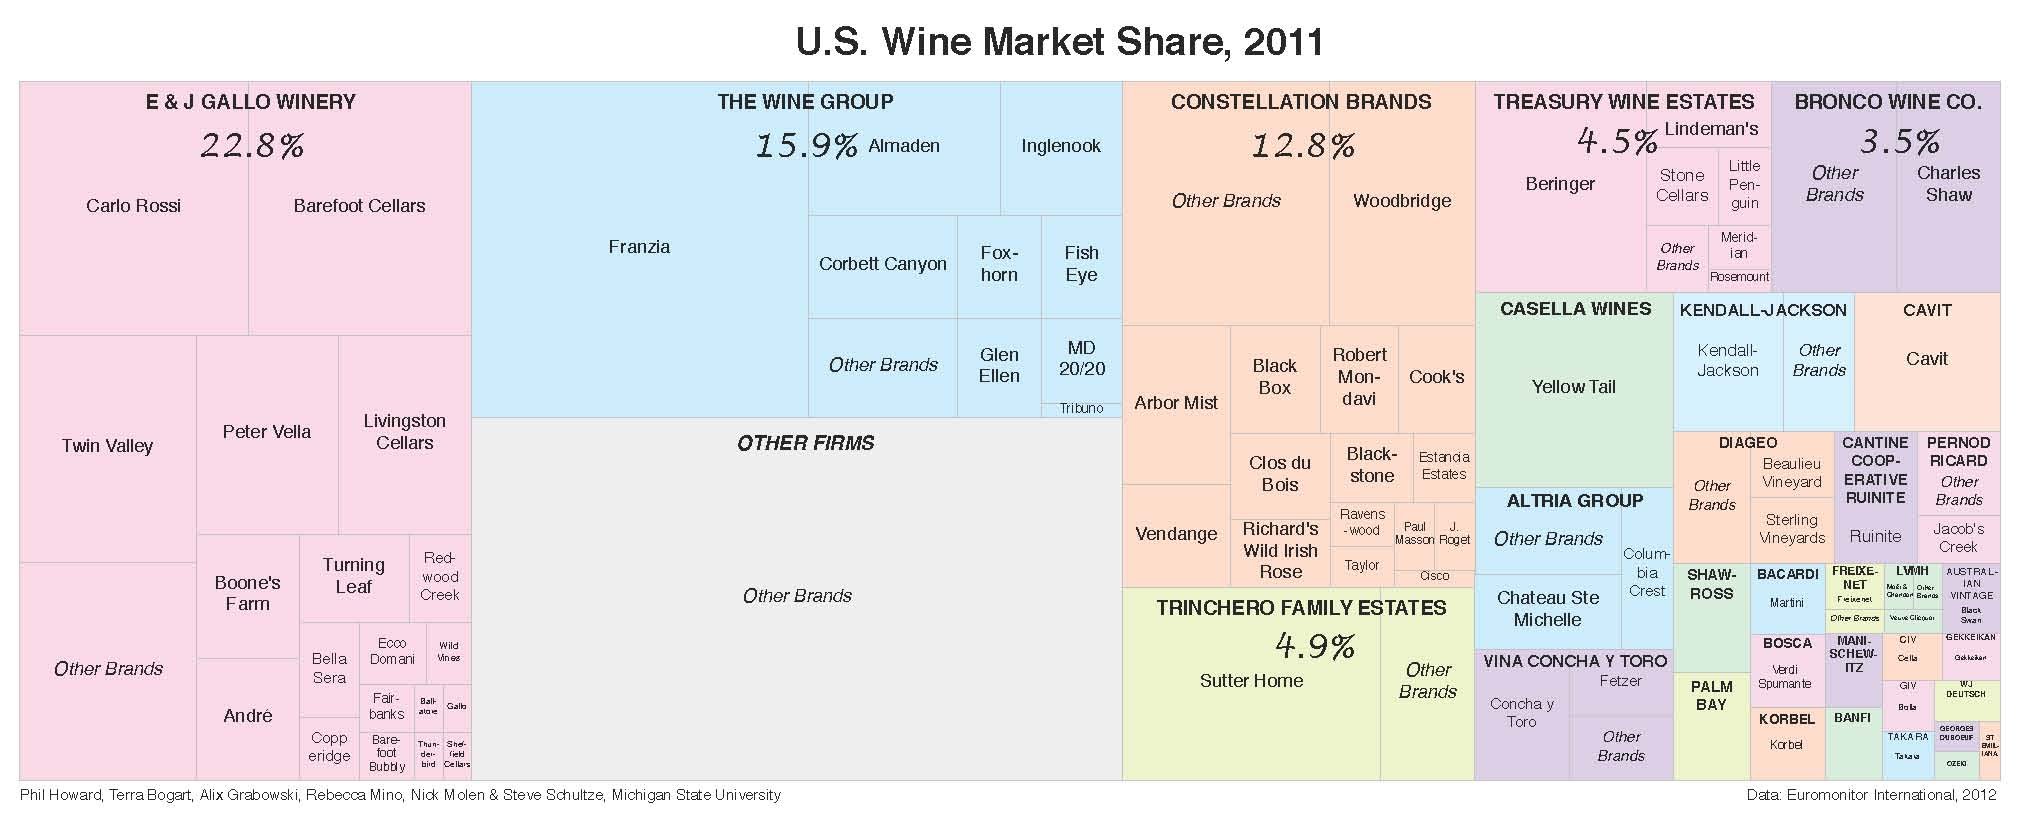 Wine market shares 2011 - Duke University.jpg